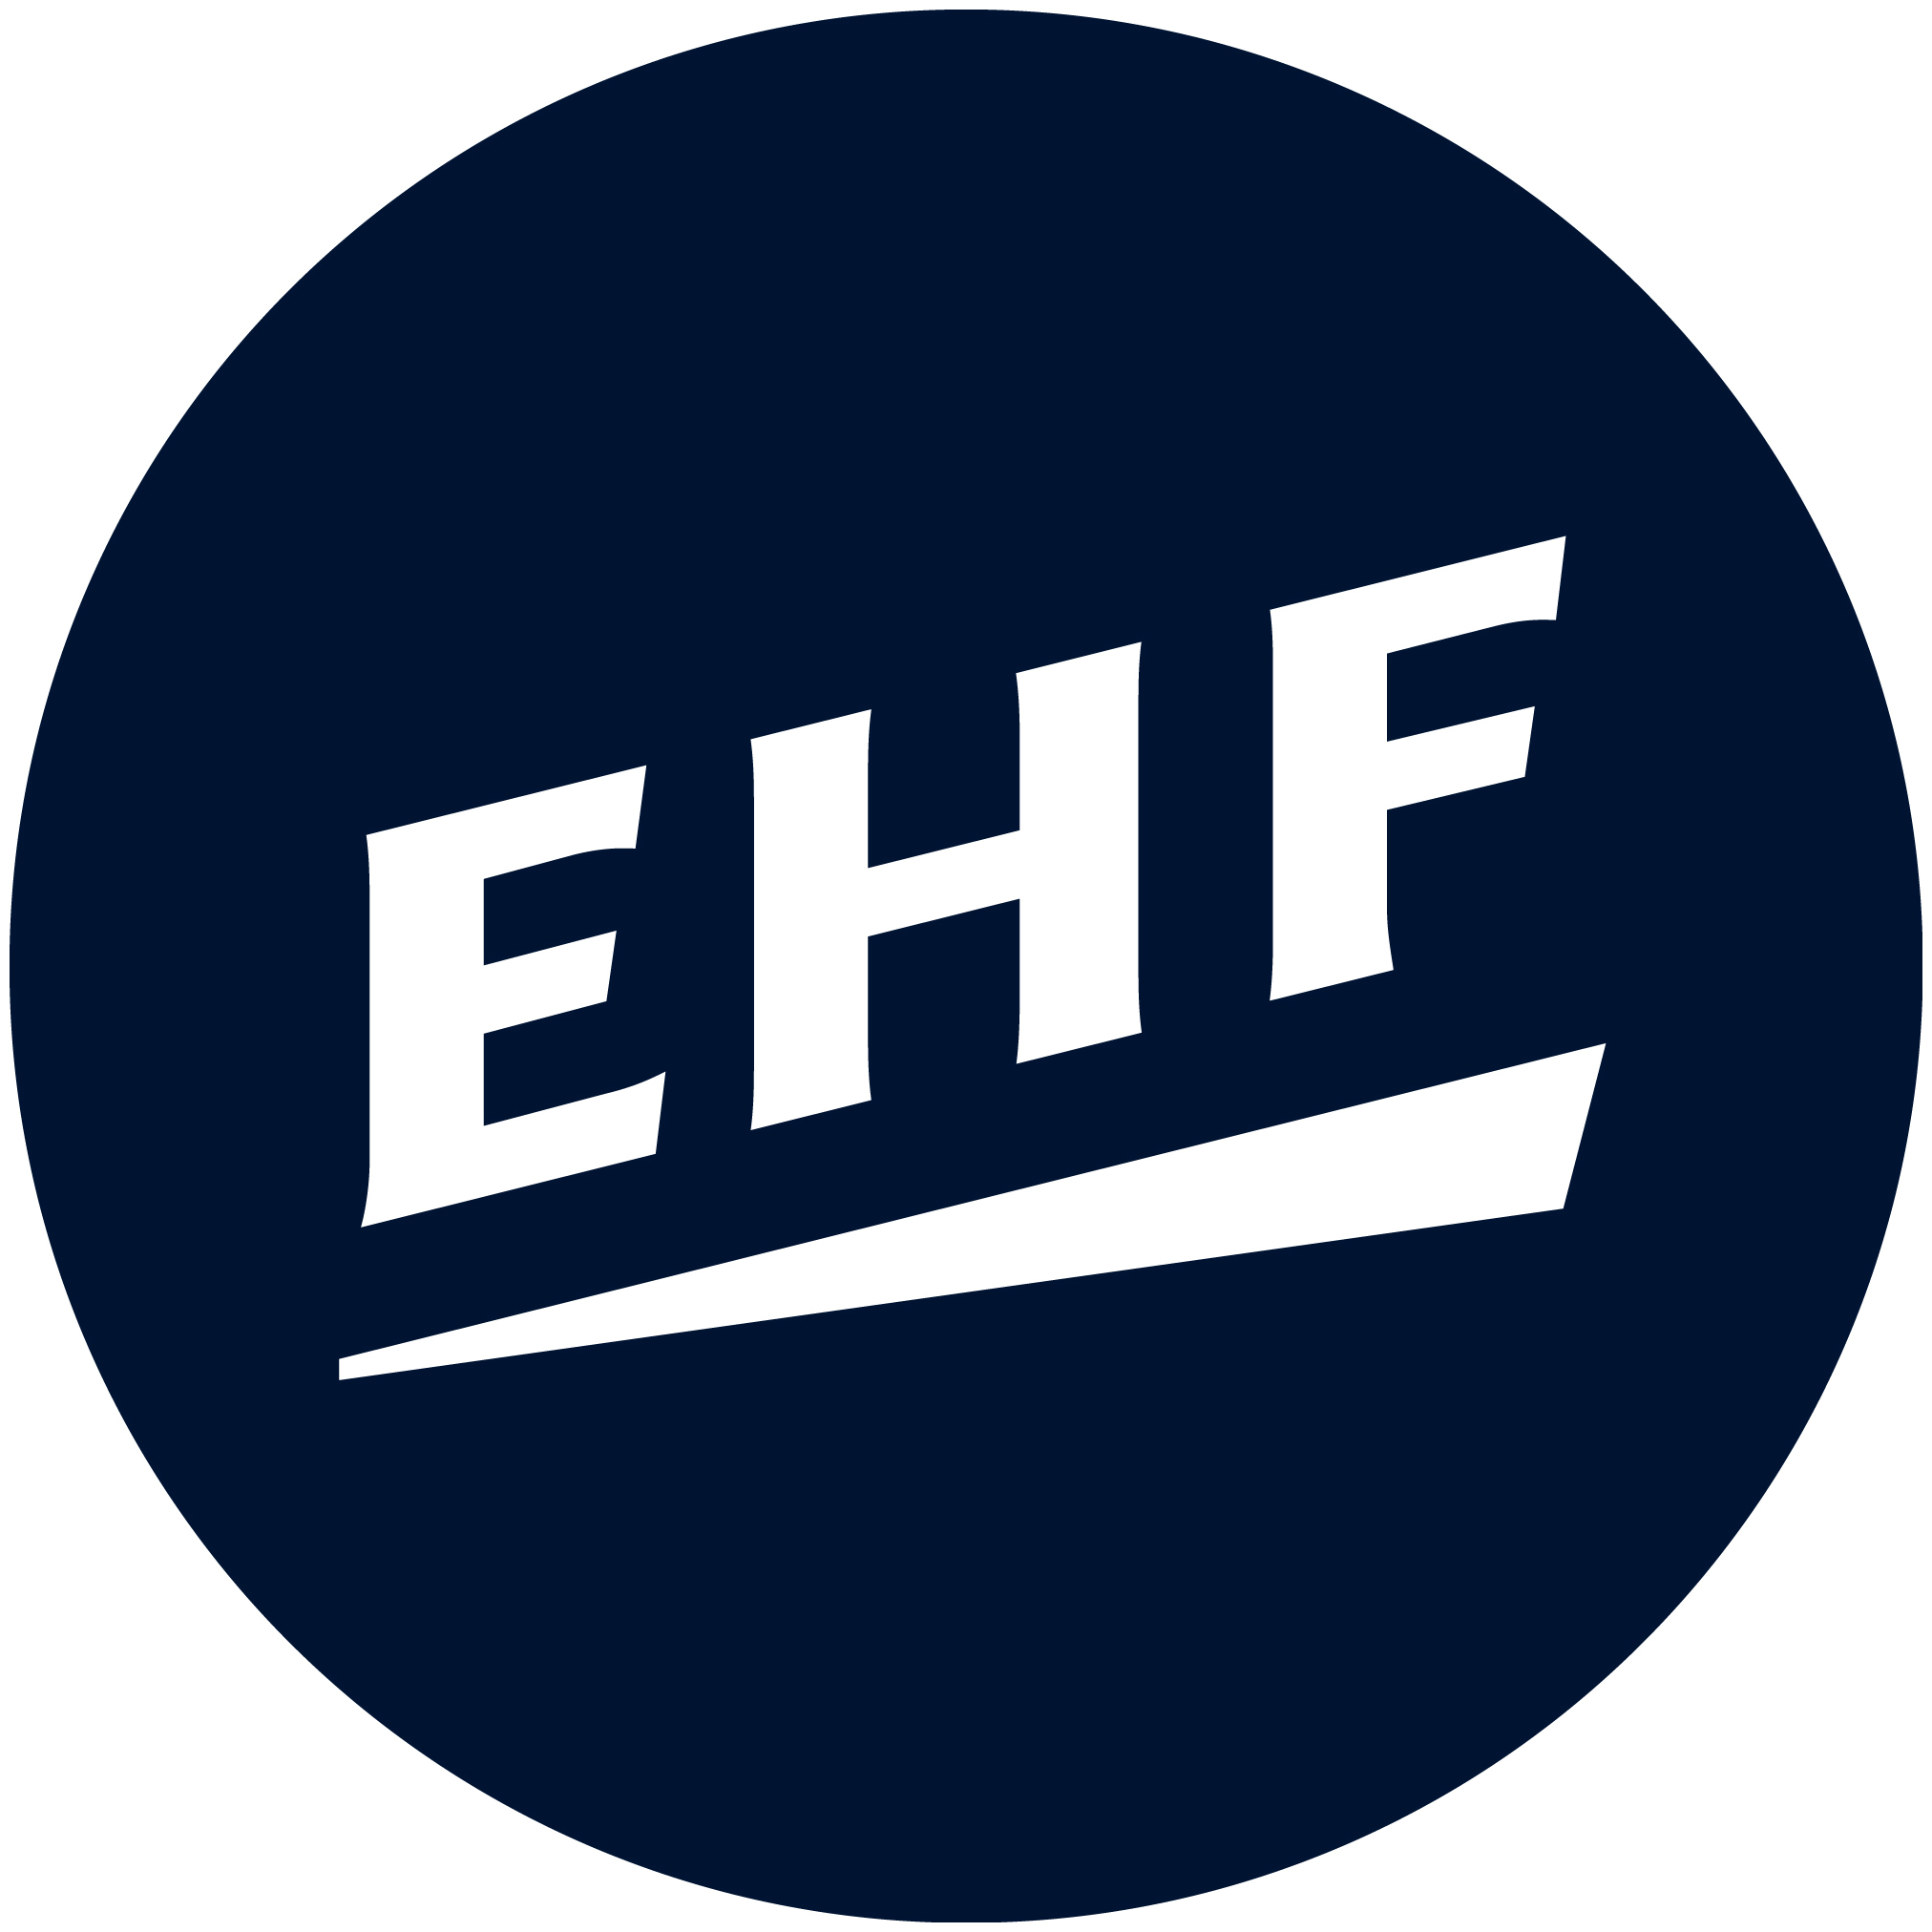 2022 European Handball Men's 20 EHF Championship